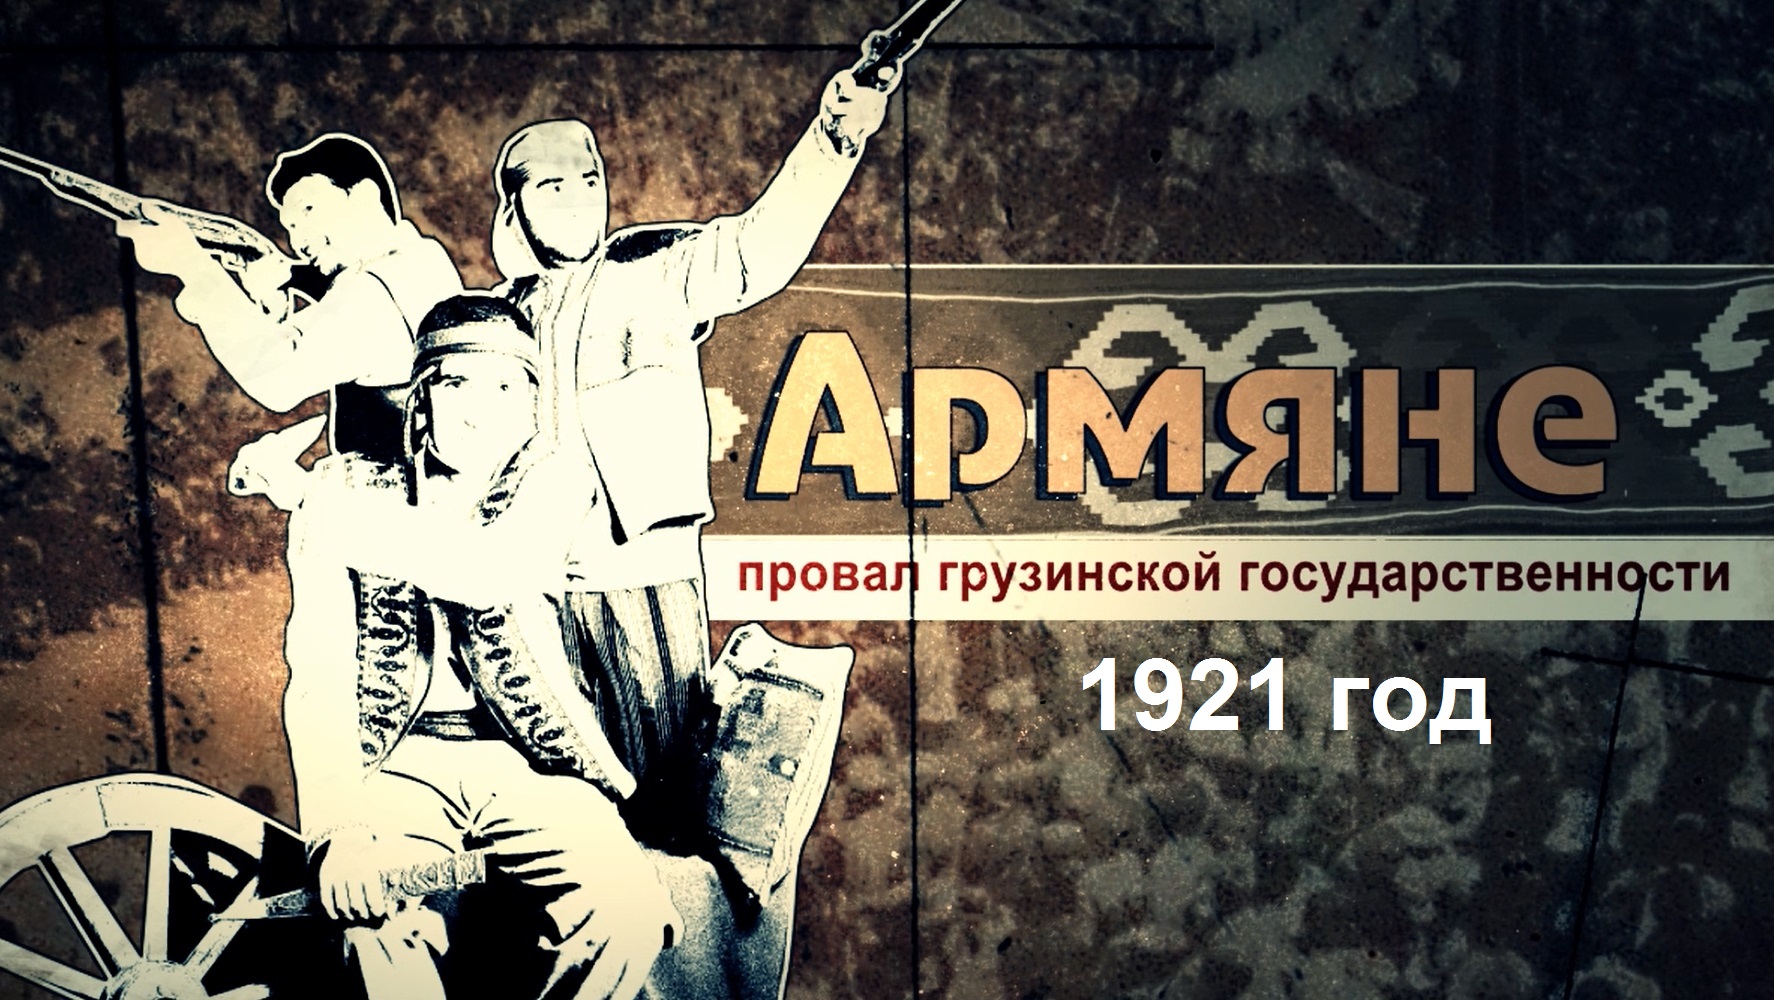 Армяне и провал грузинской государственности в 1921 году